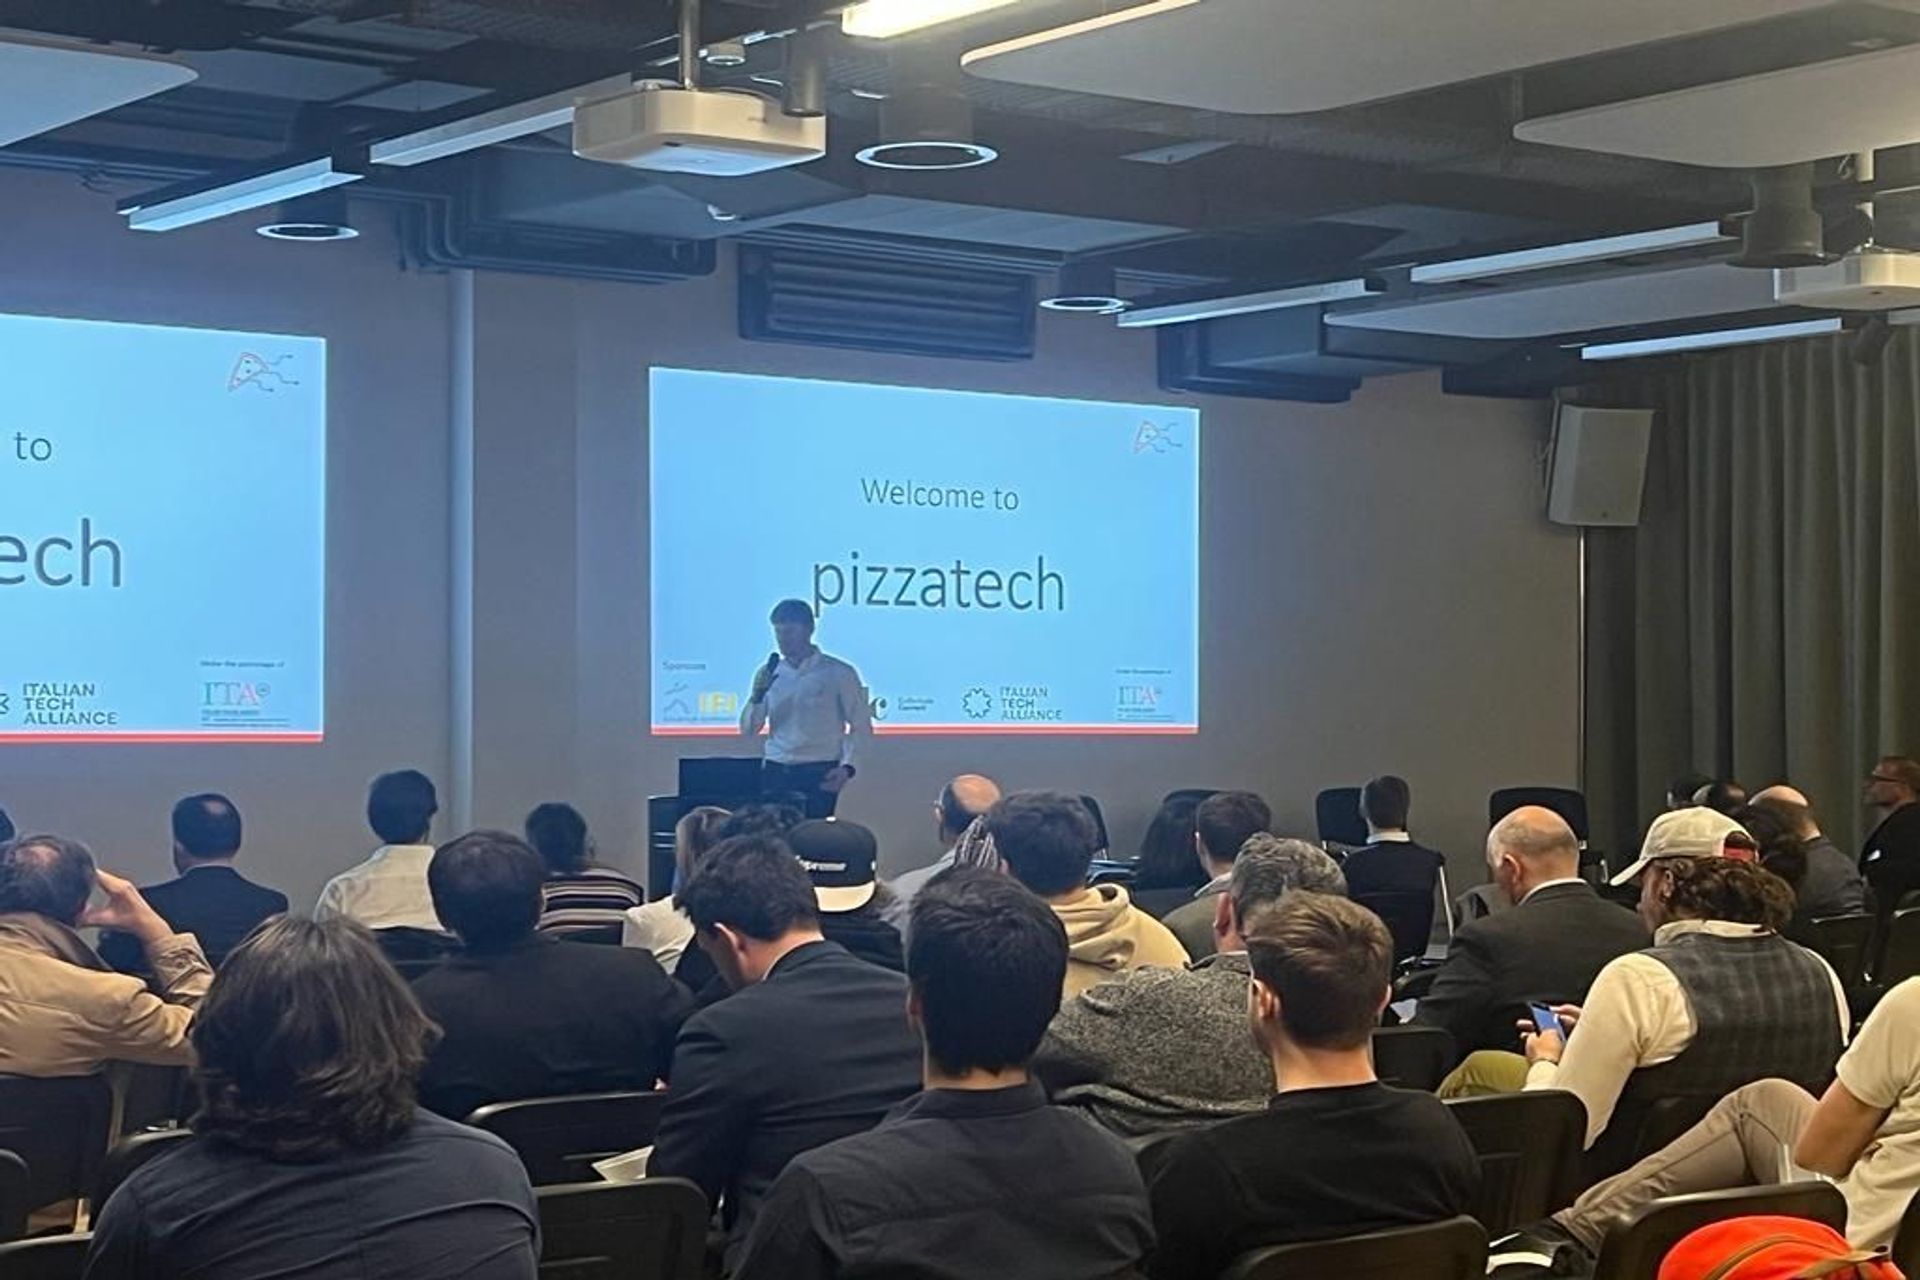 La prima edizione della “Italian Tech Night”, organizzata dal sodalizio #pizzatech, ha avuto luogo la sera del 24 marzo 2022 presso lo Startup Space by IFJ di Schlieren, vicino a Zurigo: l’intervento introduttivo dell’organizzatore Gianmaria Sbetta